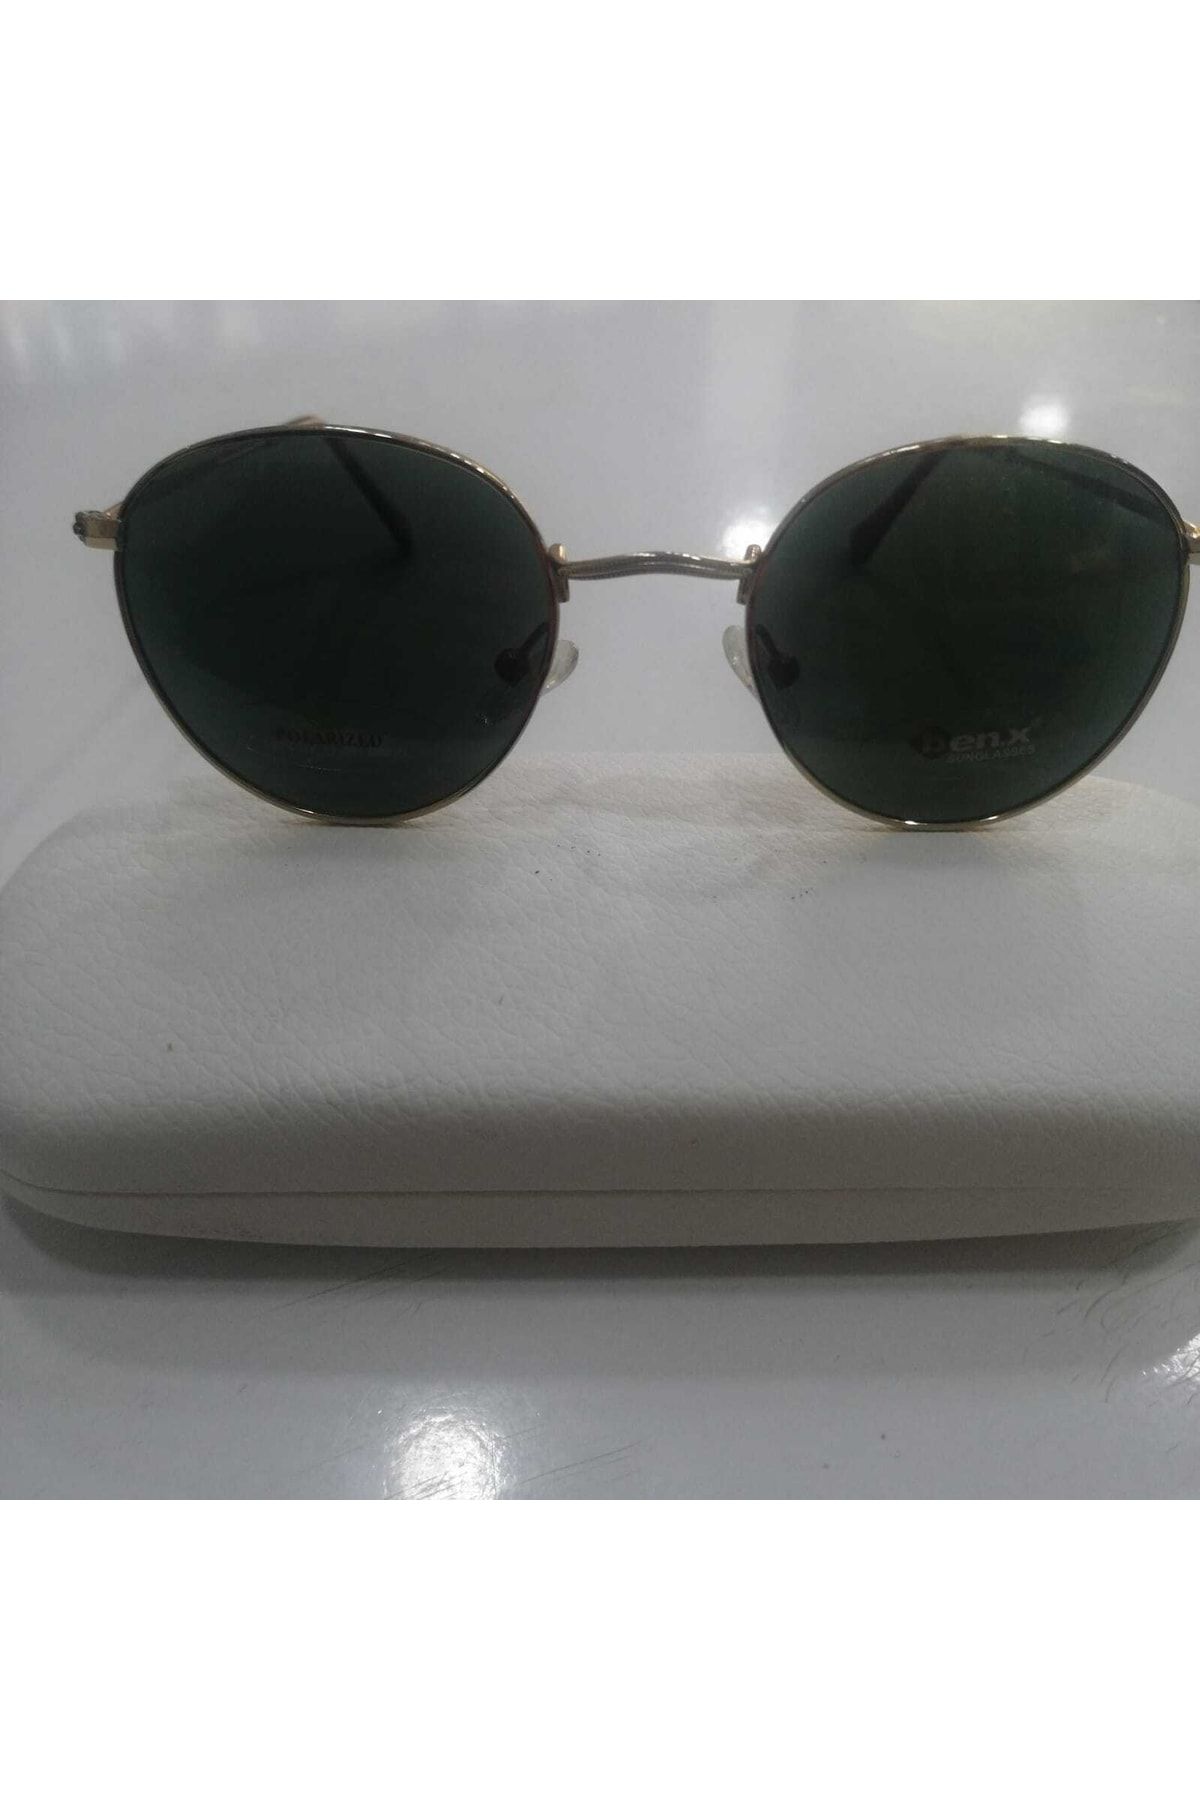 Benx Sunglasses Benx Metal Güneş Gözlüğü